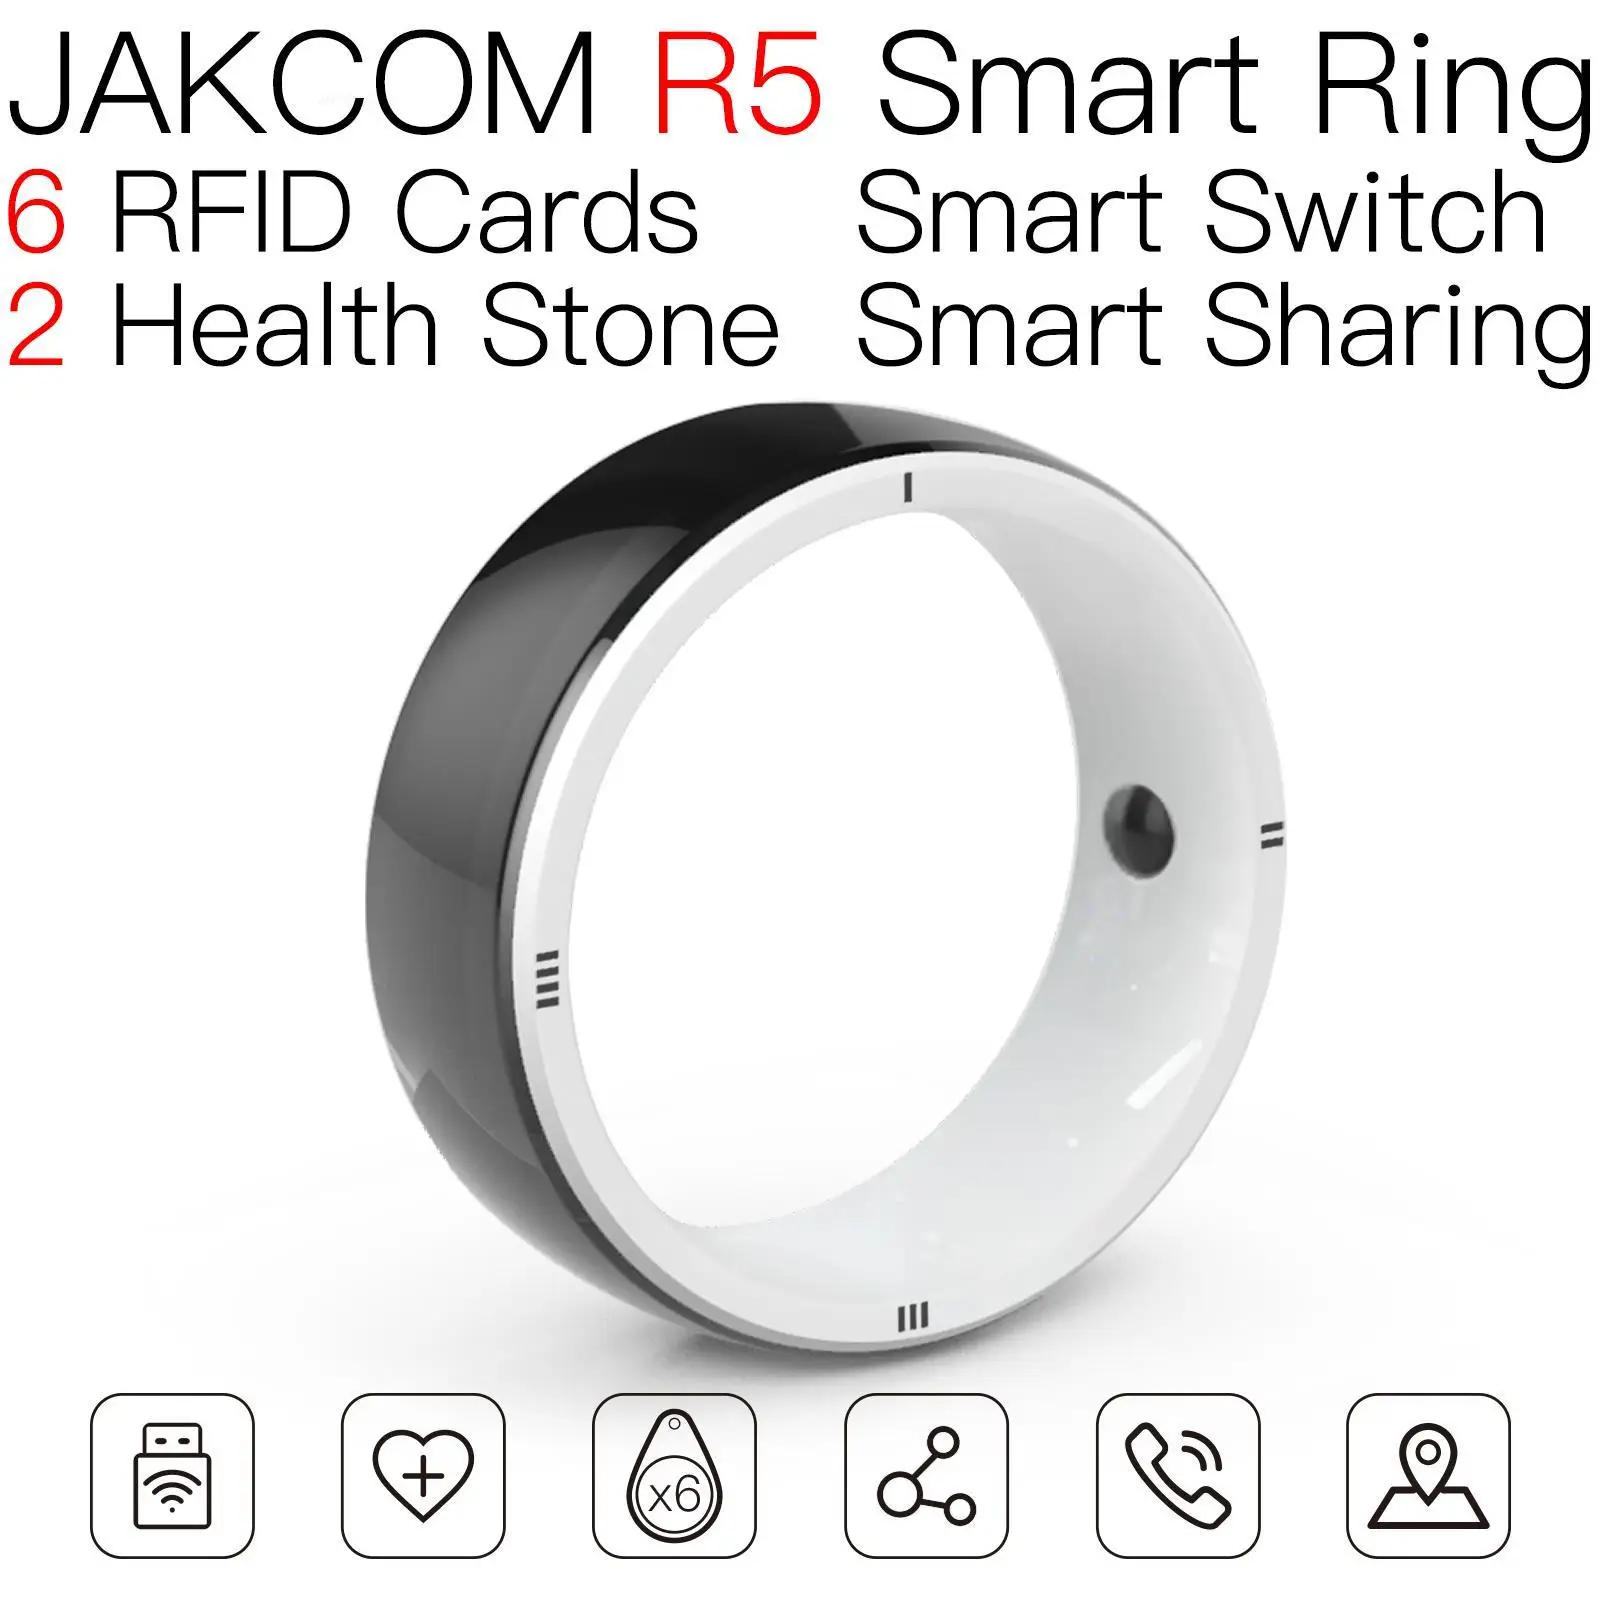 

JAKCOM R5 Smart Ring Match to gadgets pour maison fold couple self defense gamepad elite bracelet 5 next tool